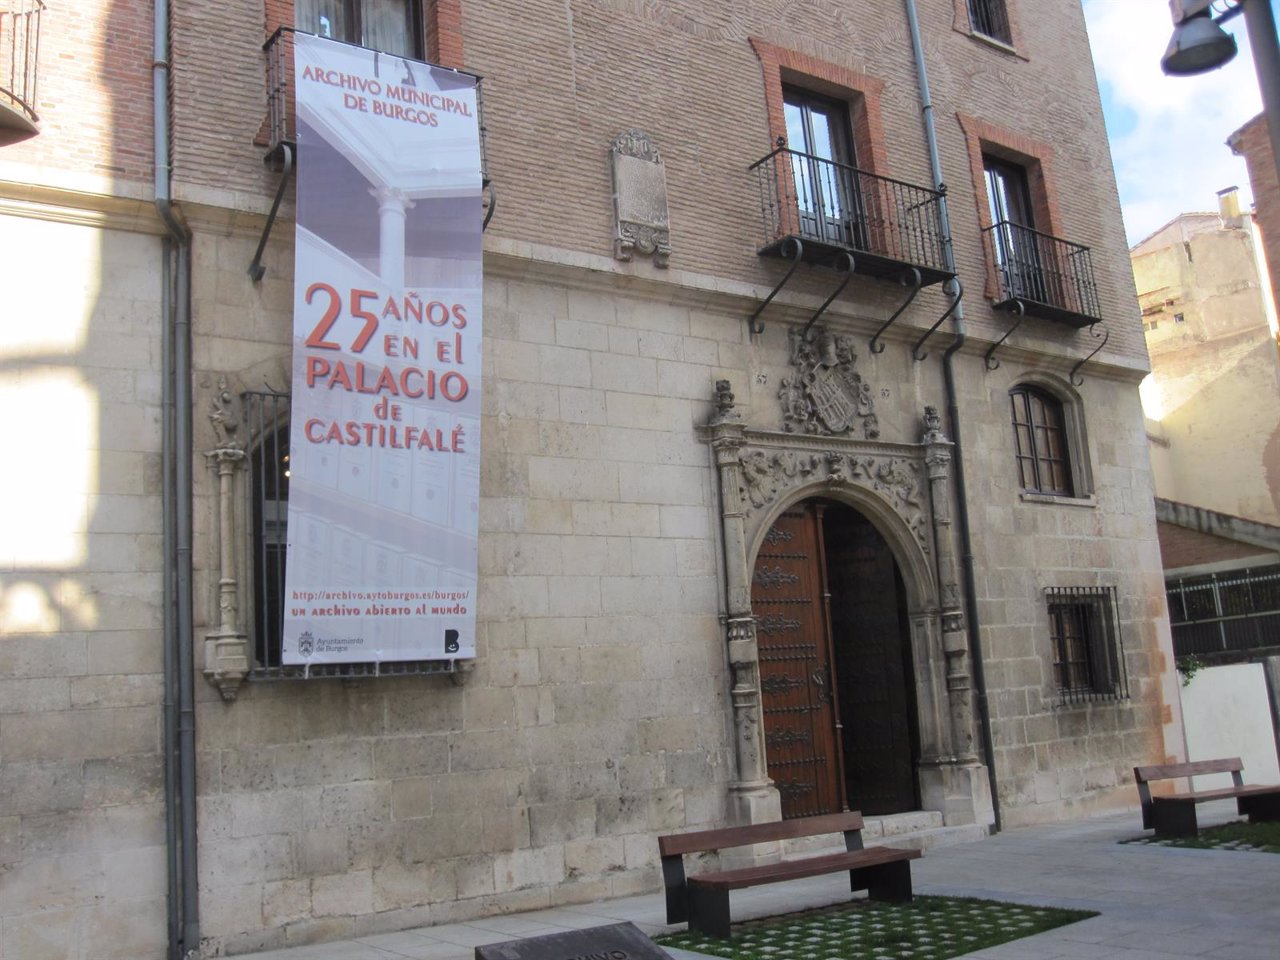 Fachada del Archivo Municipal de Burgos